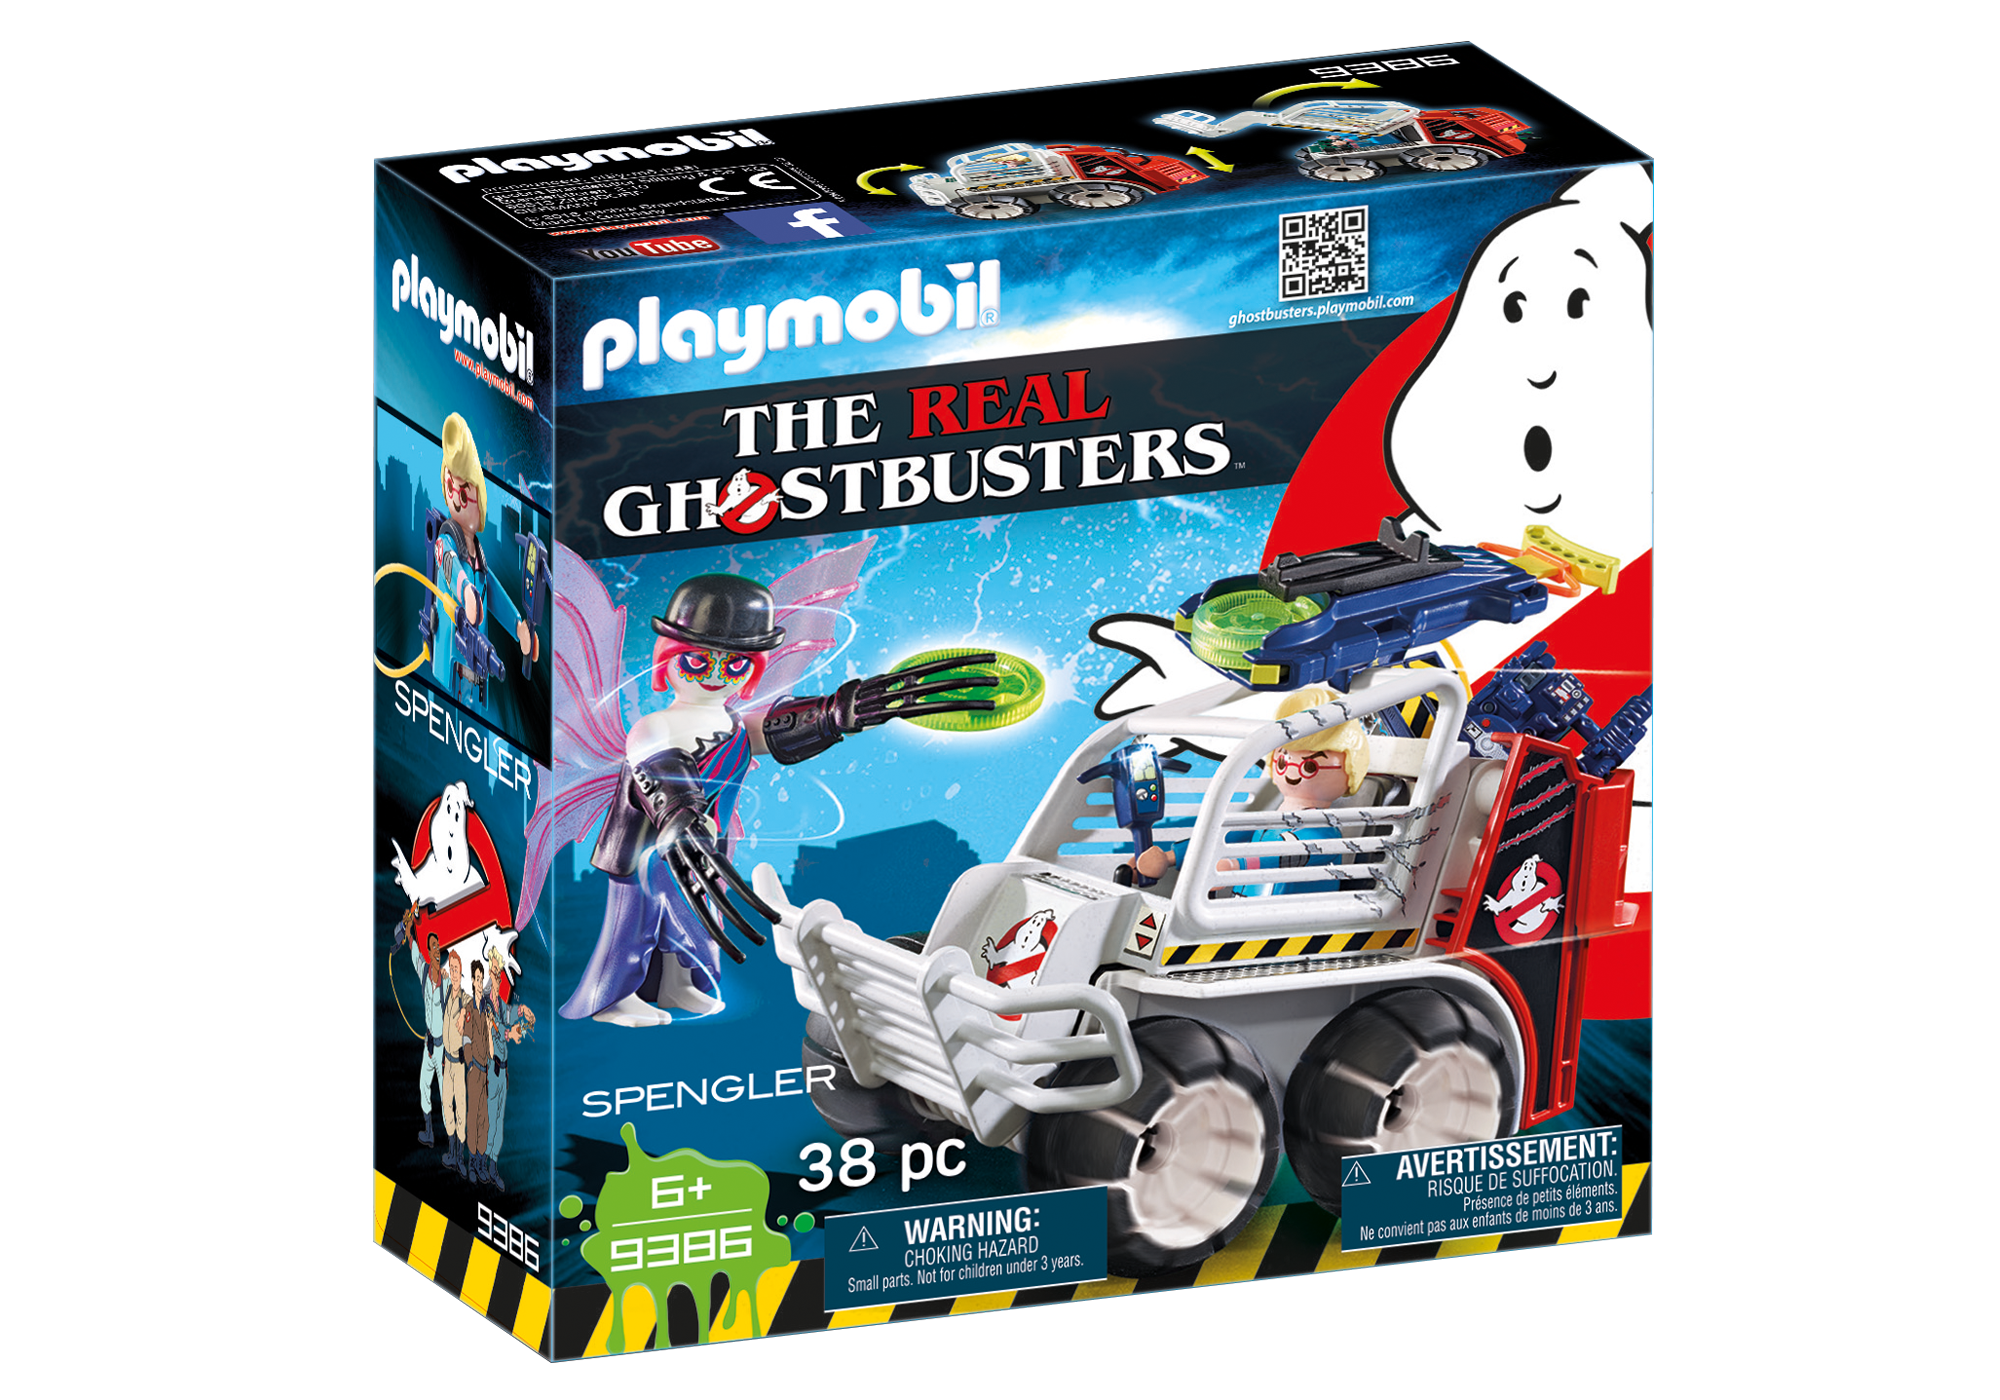 Playmobil Ghostbusters - Page 3 9386_product_box_front?locale=de-DE,de,*&$pdp_product_main_xl$